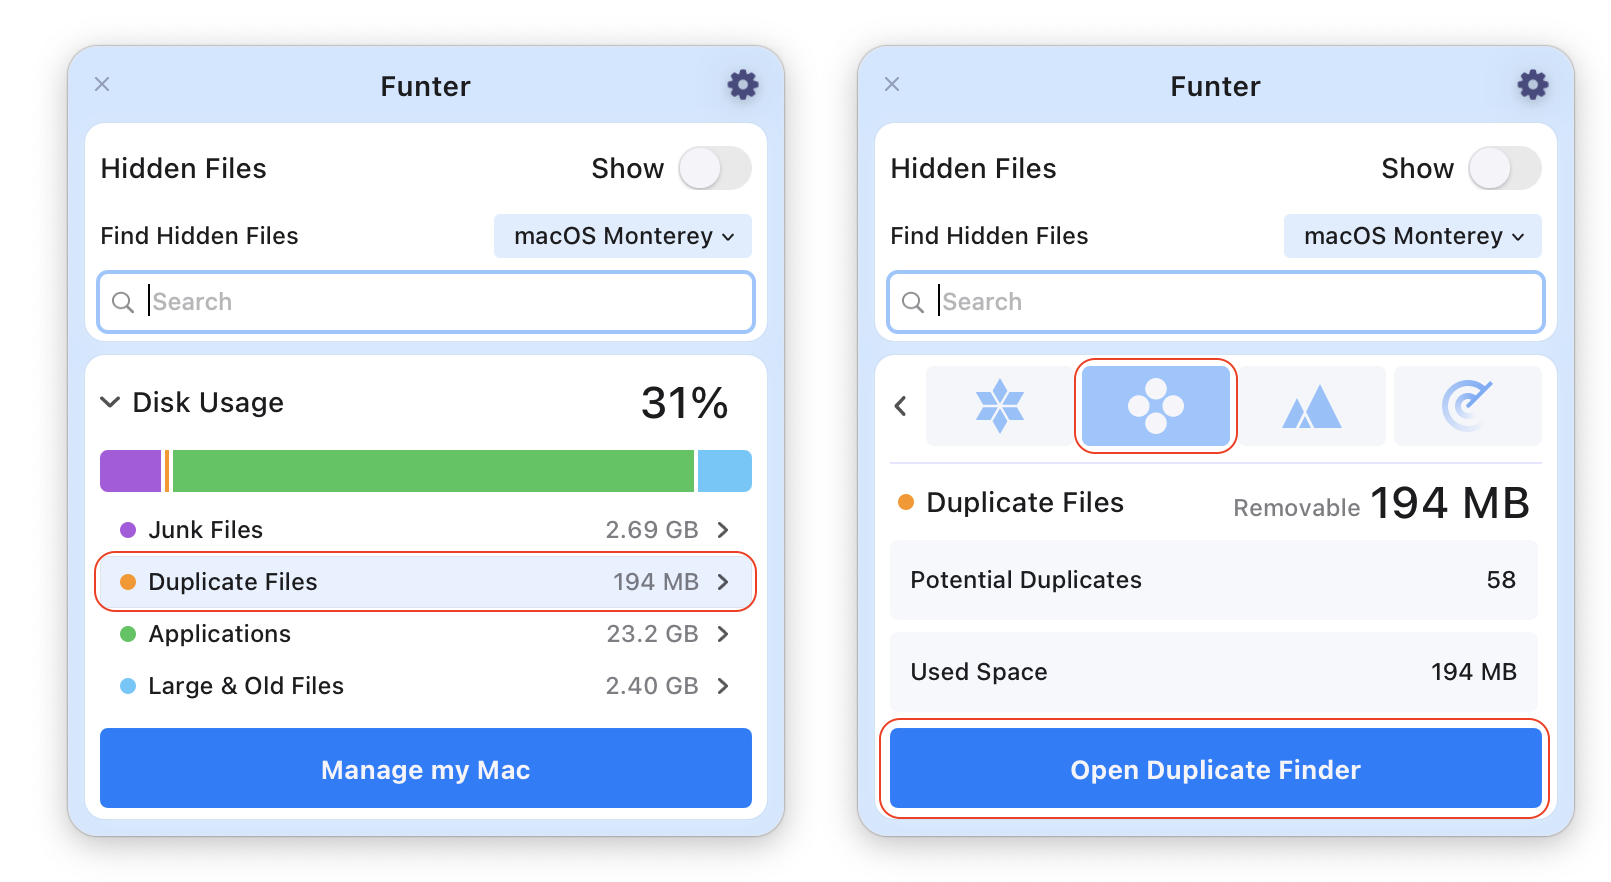 Duplicate File Remover in Funter